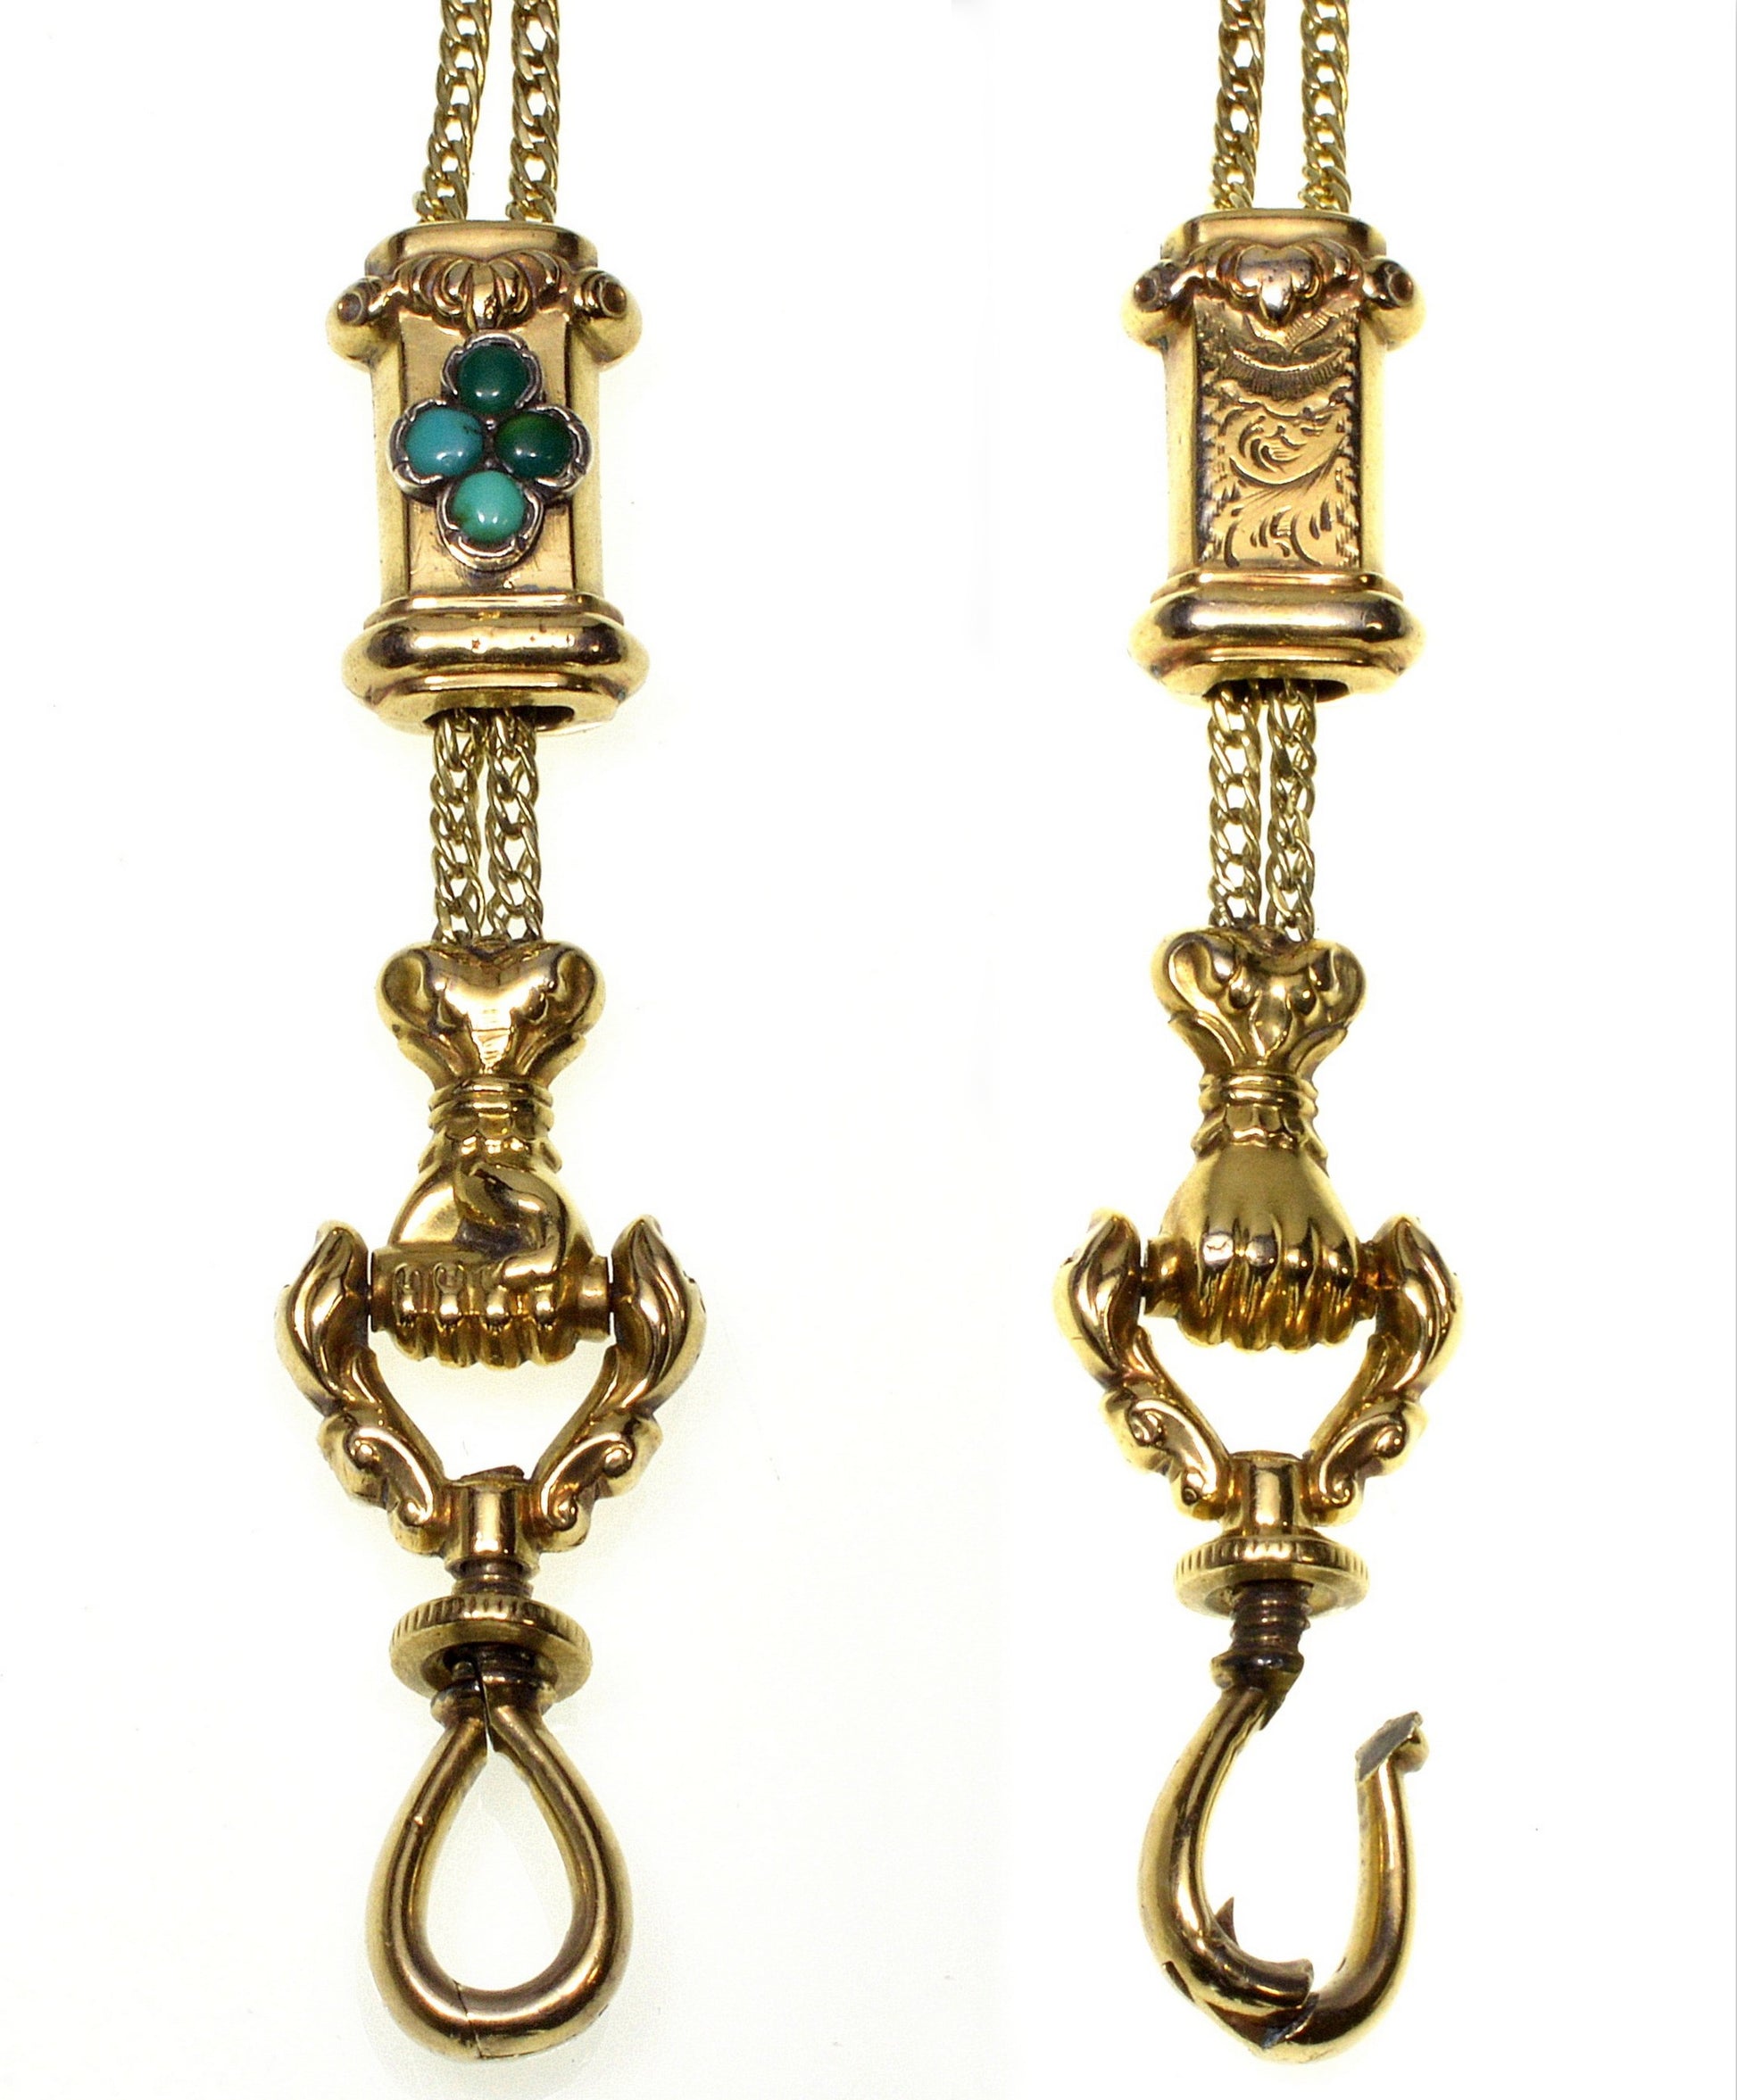 Antique Edwardian Doubled Lorgnette Chain Necklace